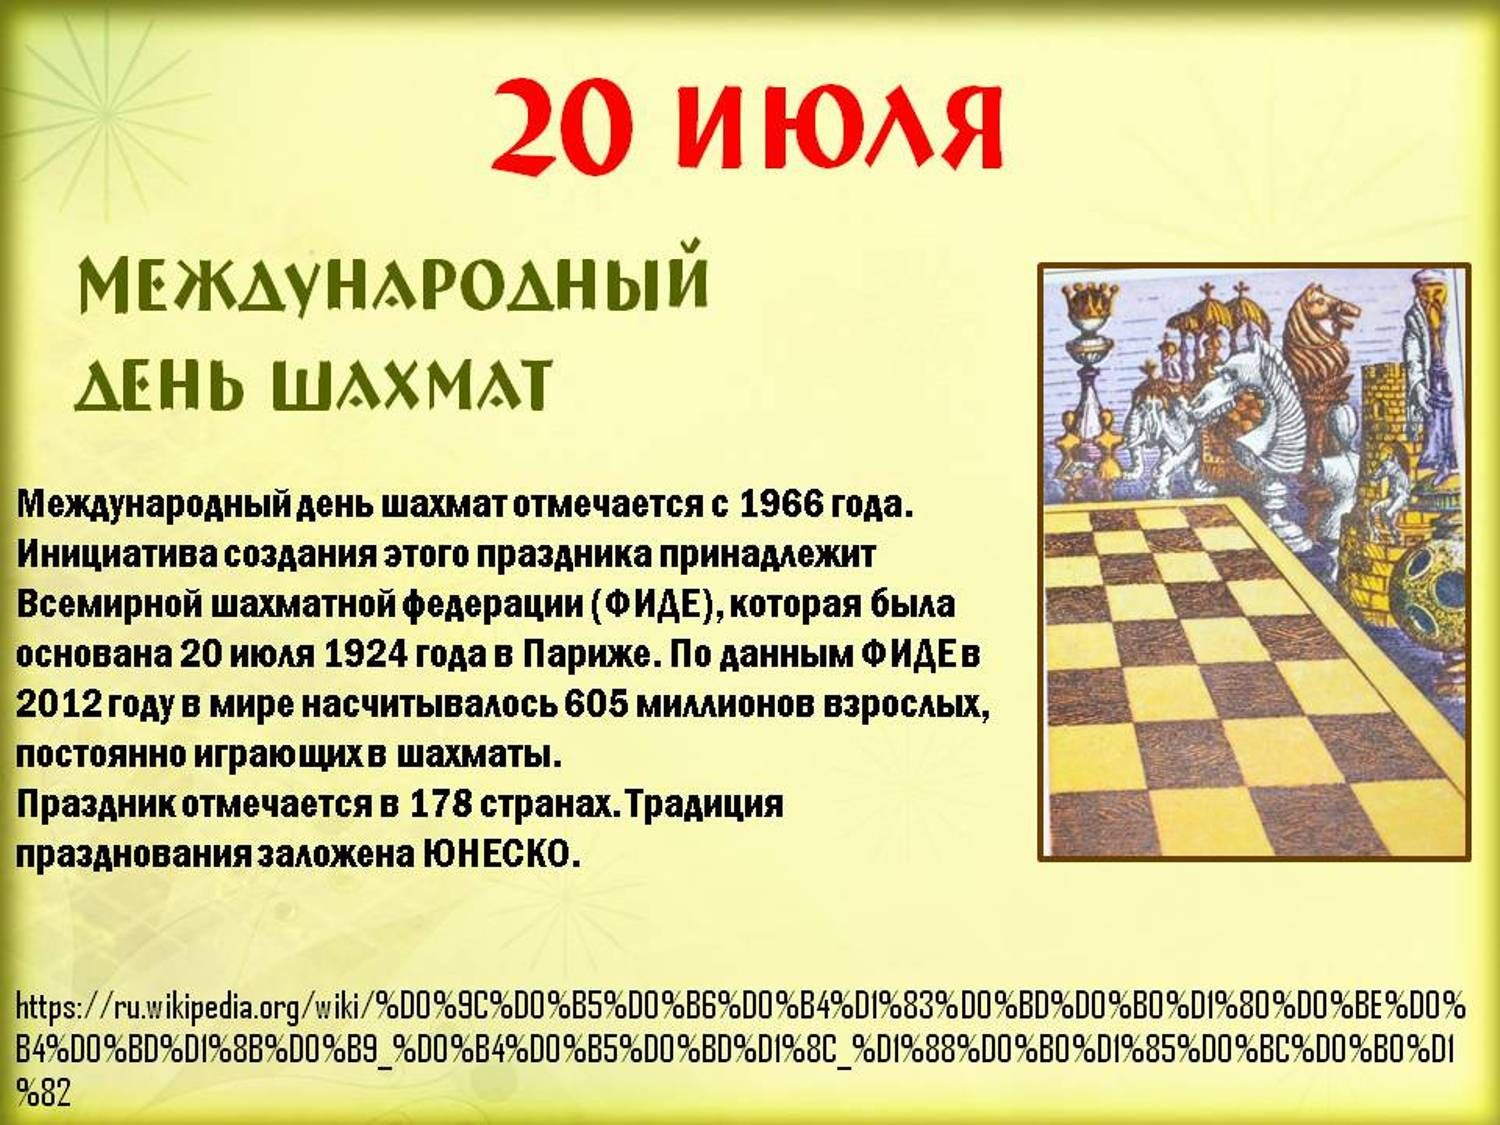 Дата 20 июля. 20 Июля Международный день шахмат. 20 Июля праздник день шахмат. Международный день шахмат (International Chess Day). Шахматы 20 июля.